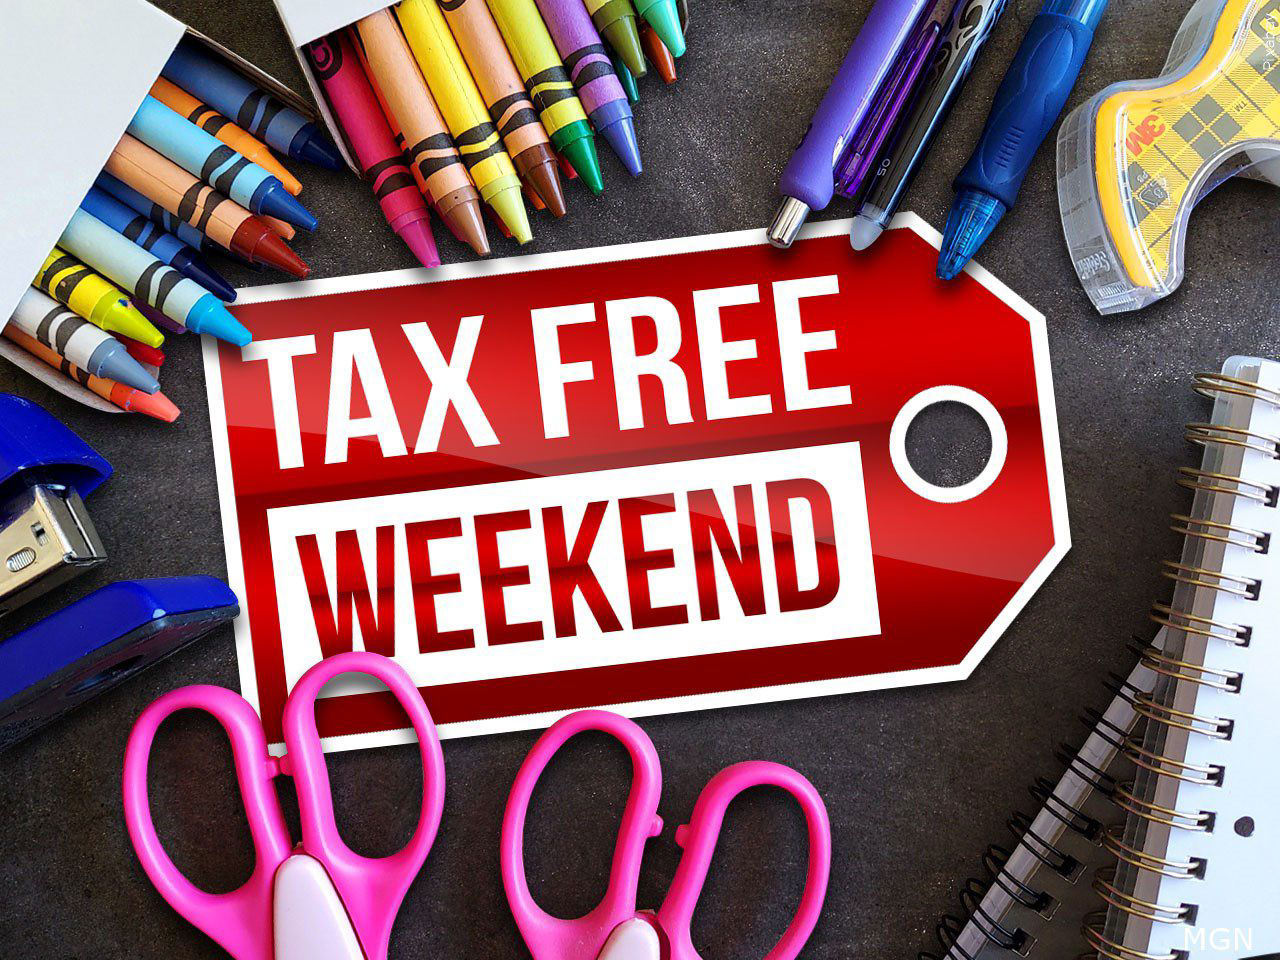 Texas Tax Free Weekend 101